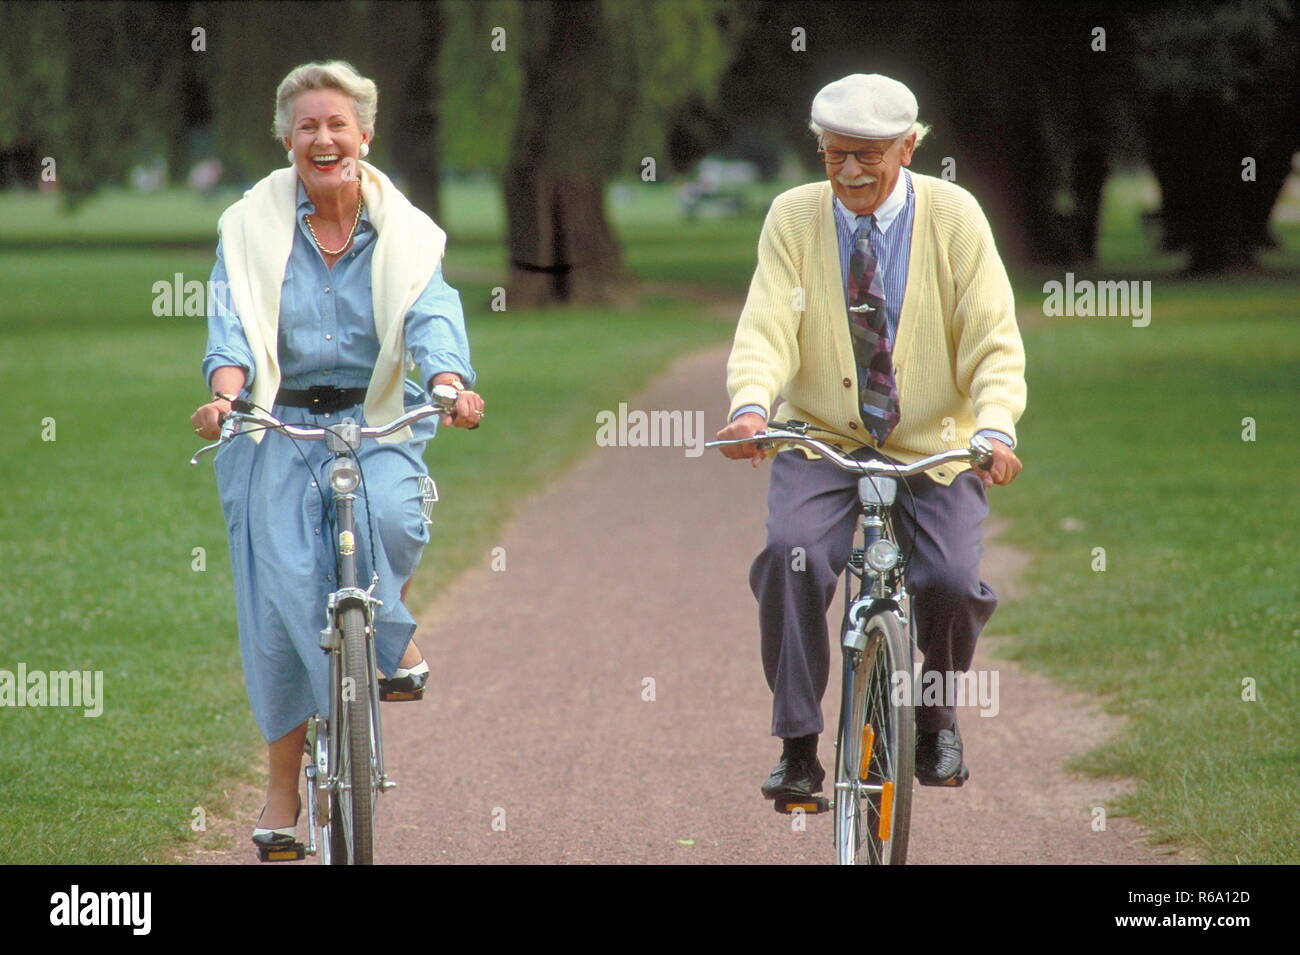 Ritratto, Parkszene, Seniorenpaar, unterwegs mit den Fahrraedern auf einem Parkweg Foto Stock